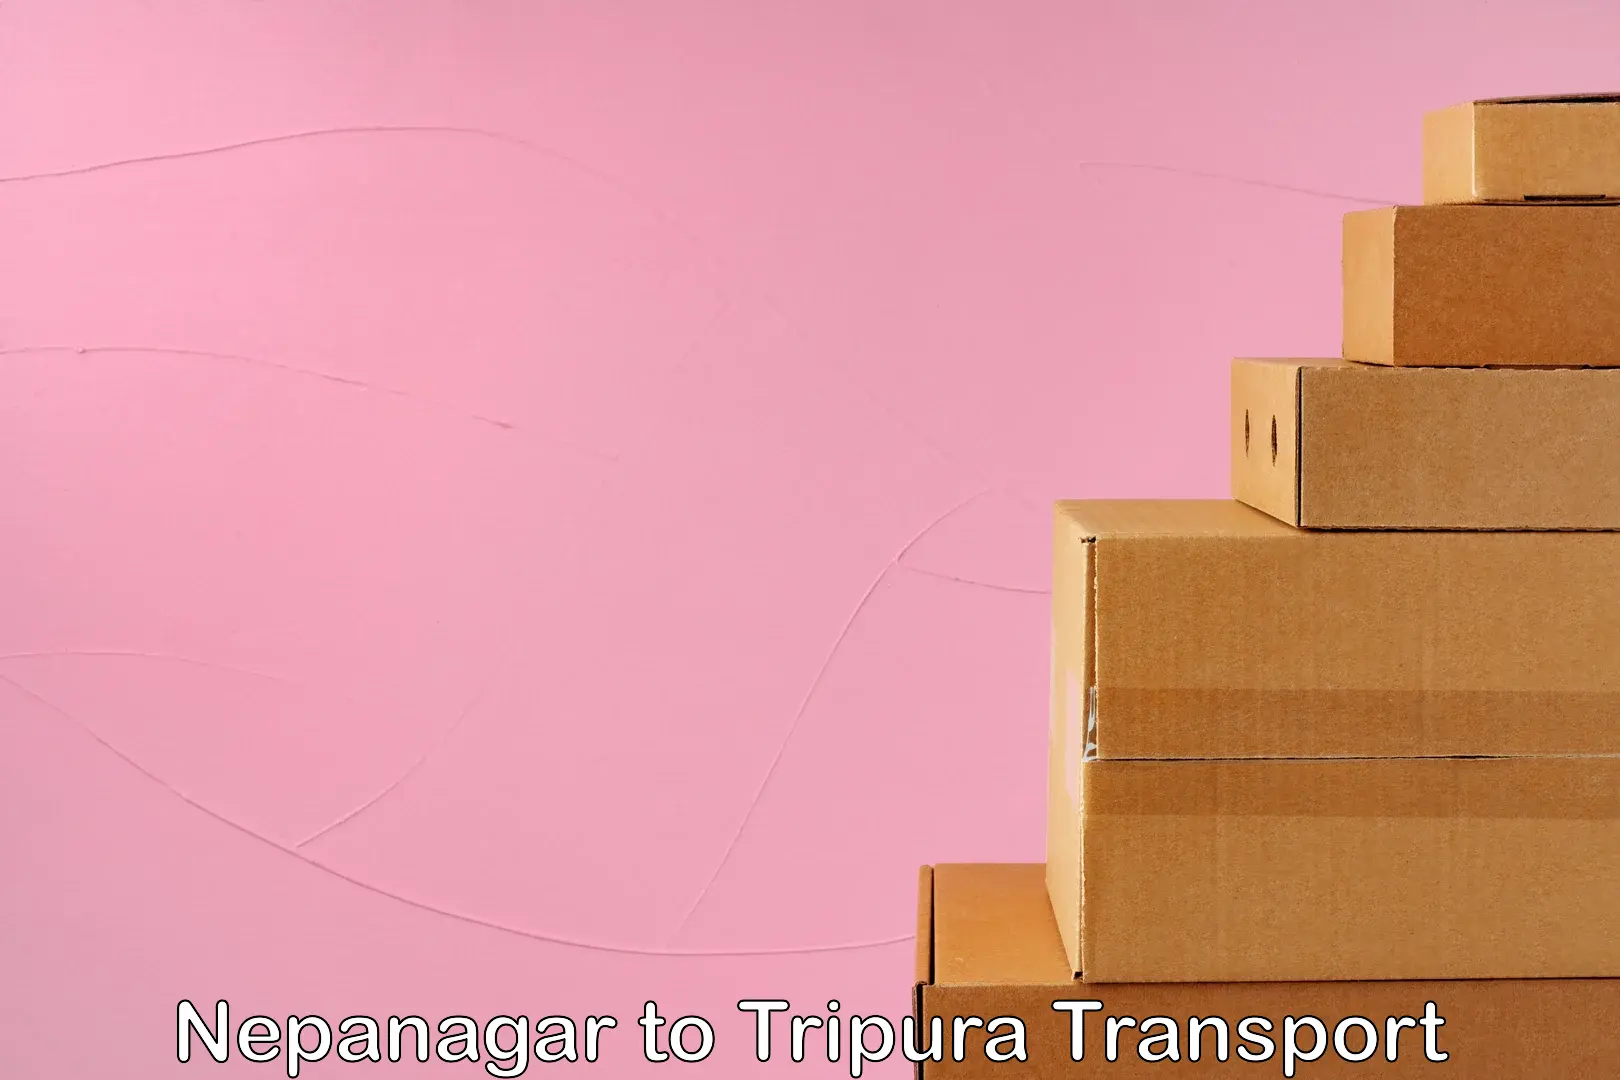 Cargo transportation services Nepanagar to Manughat